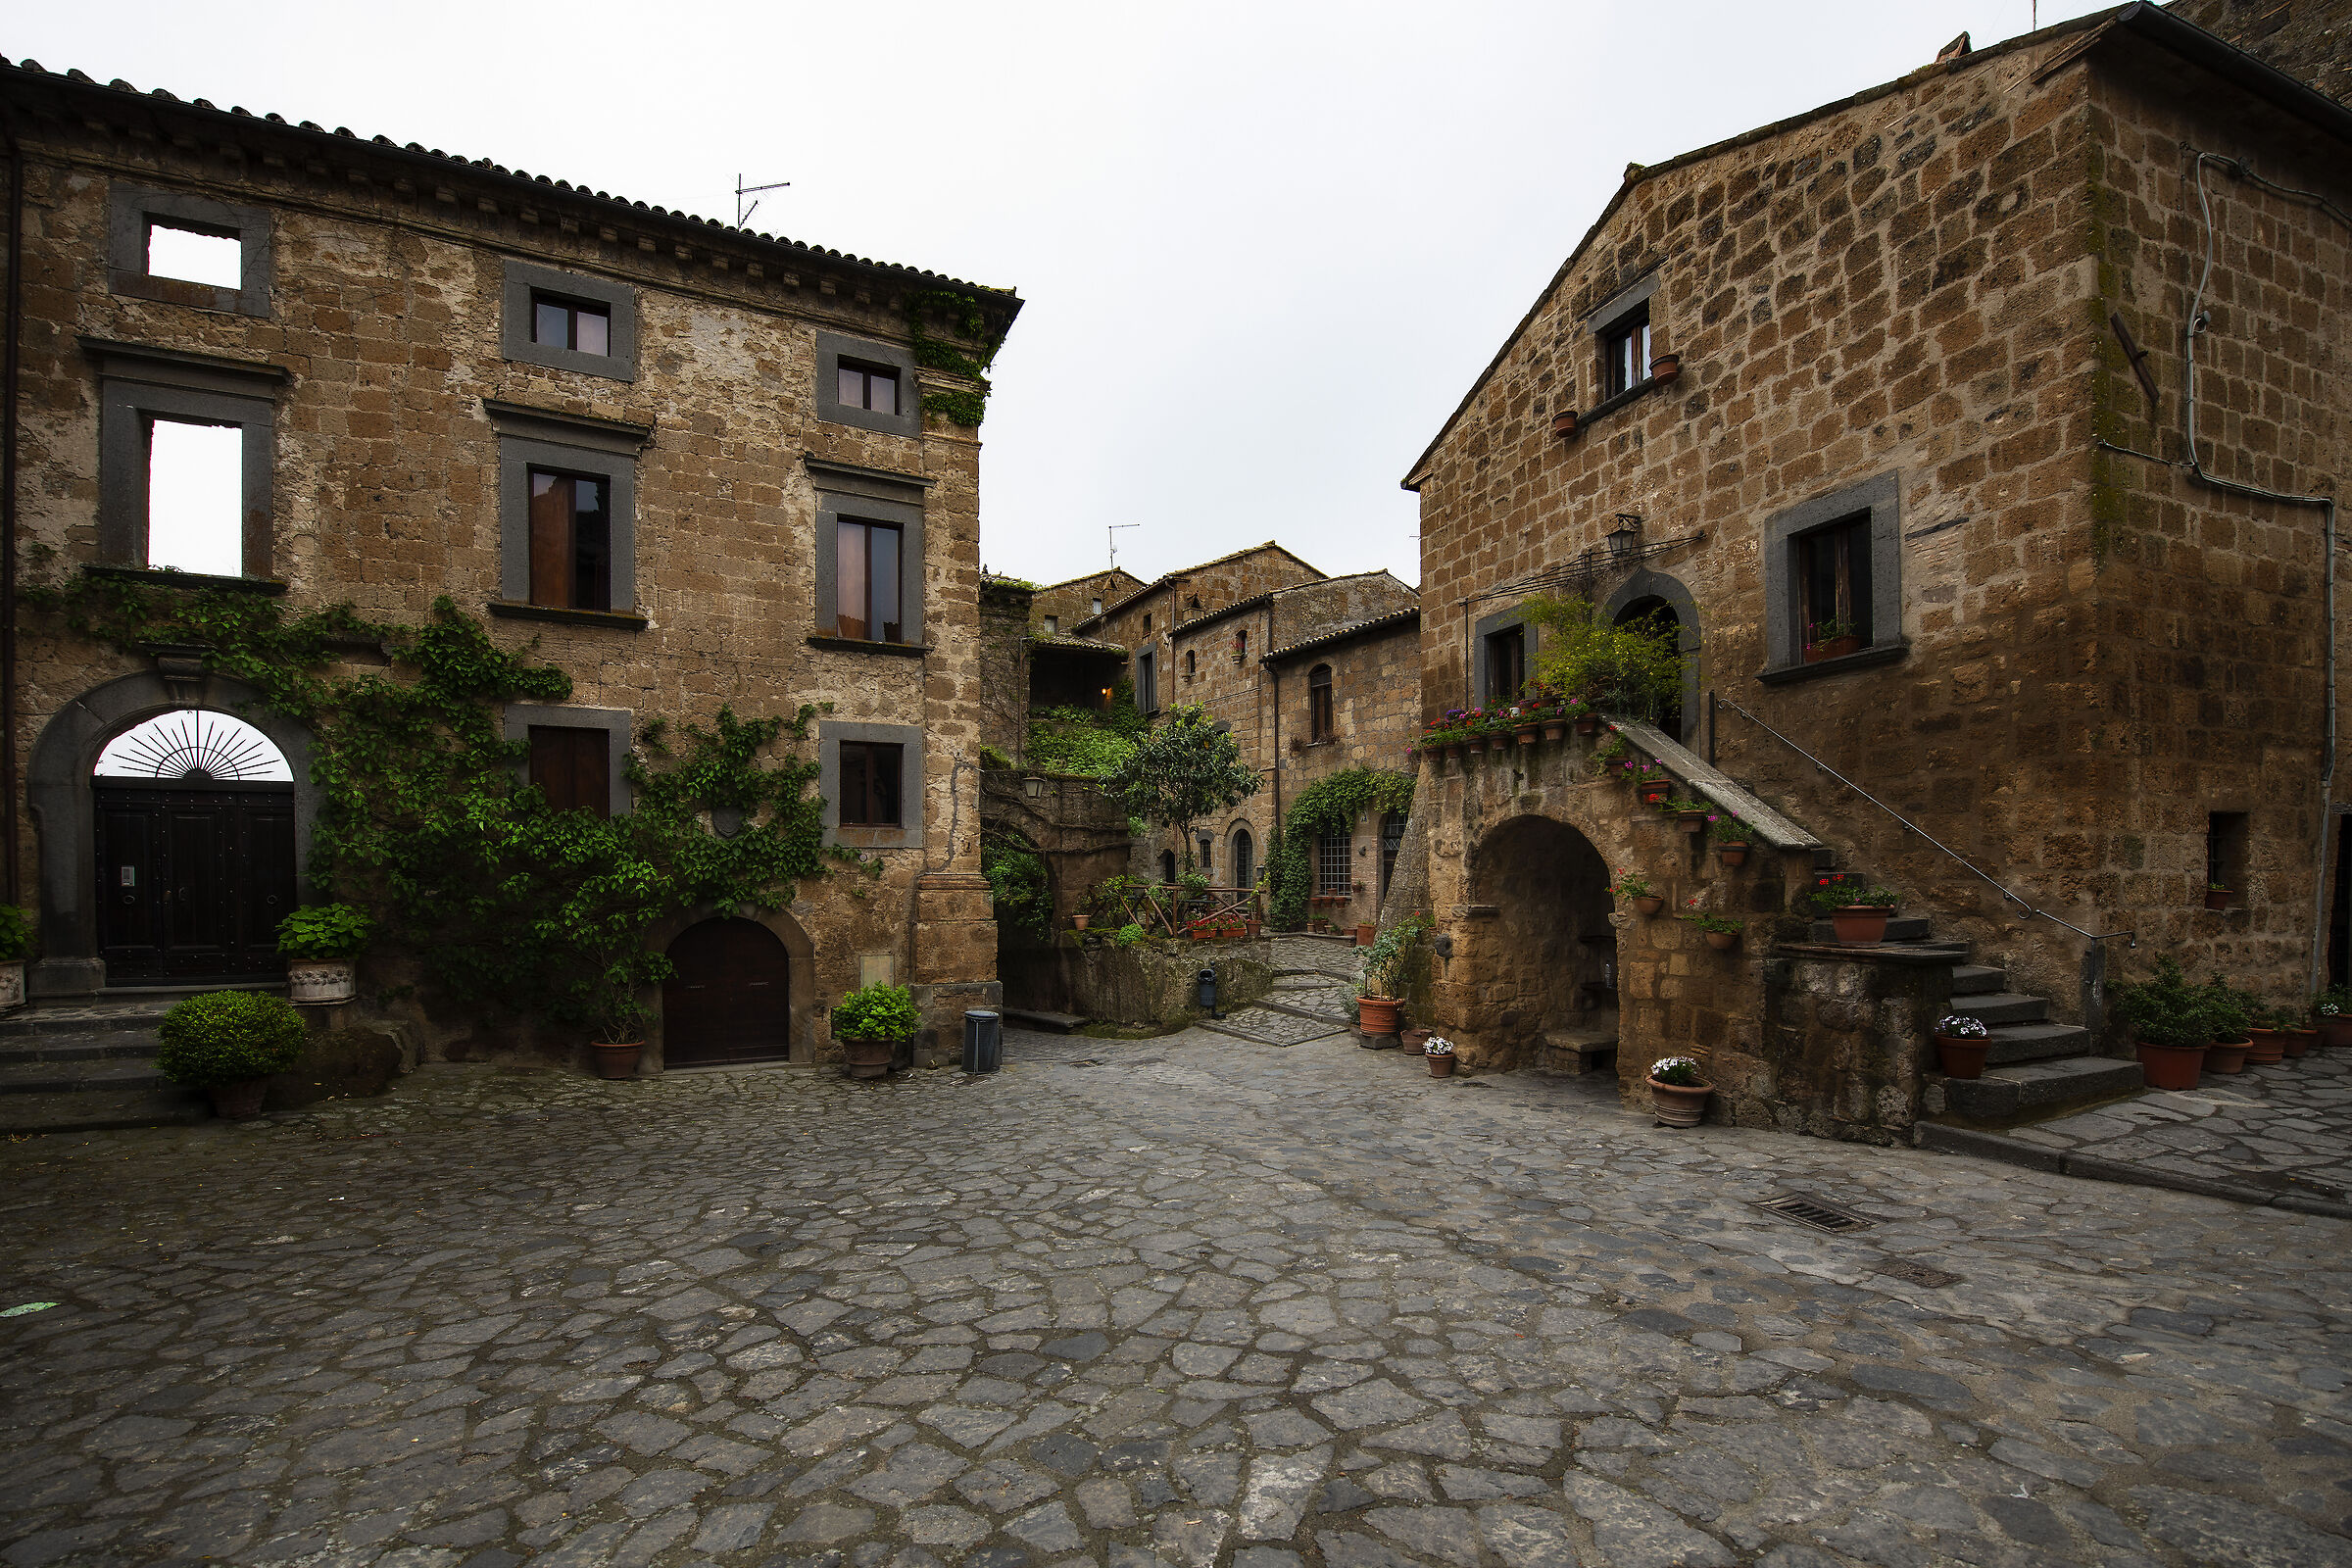 The village of Civita di Bagnoregio...